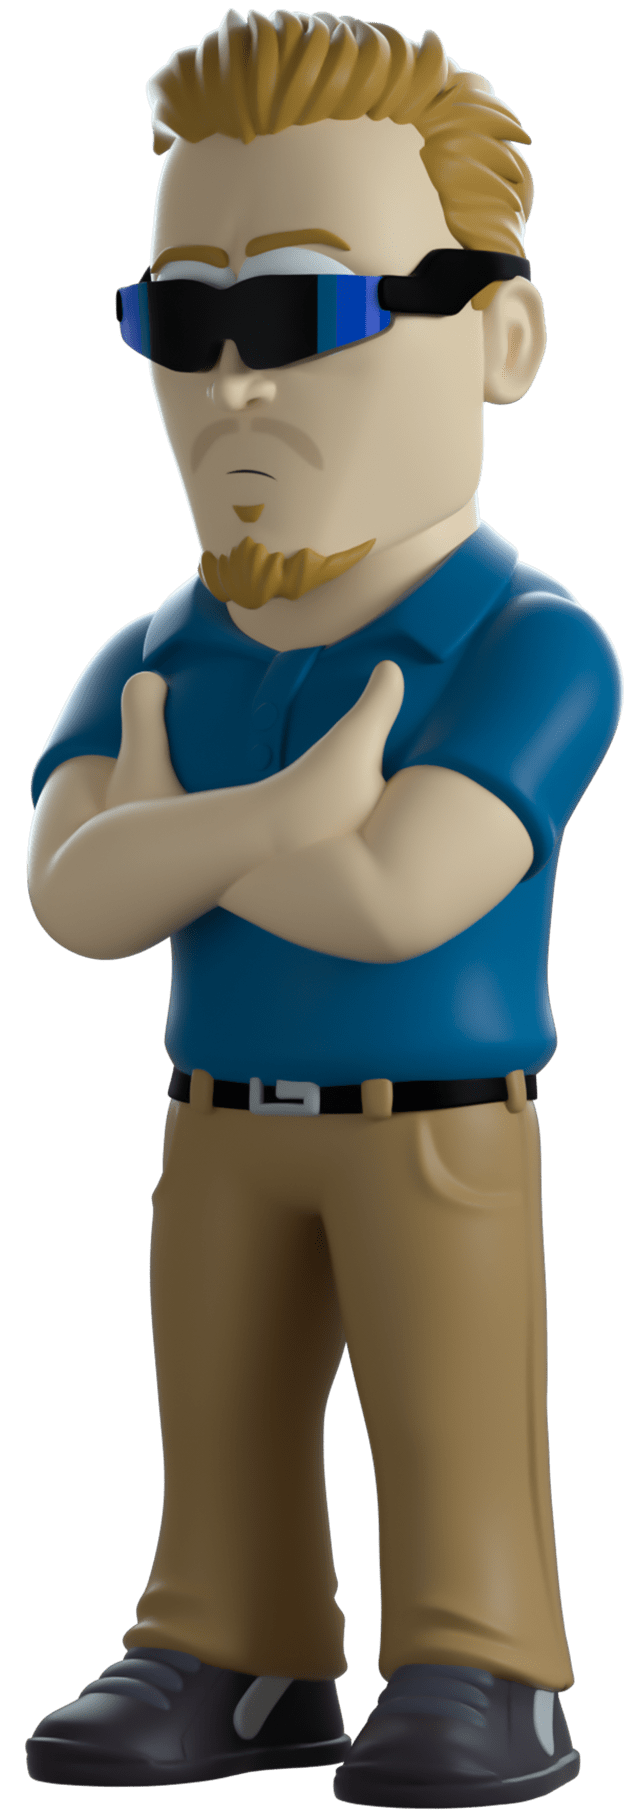 PC Principal South Park Youtooz Figurine - 5